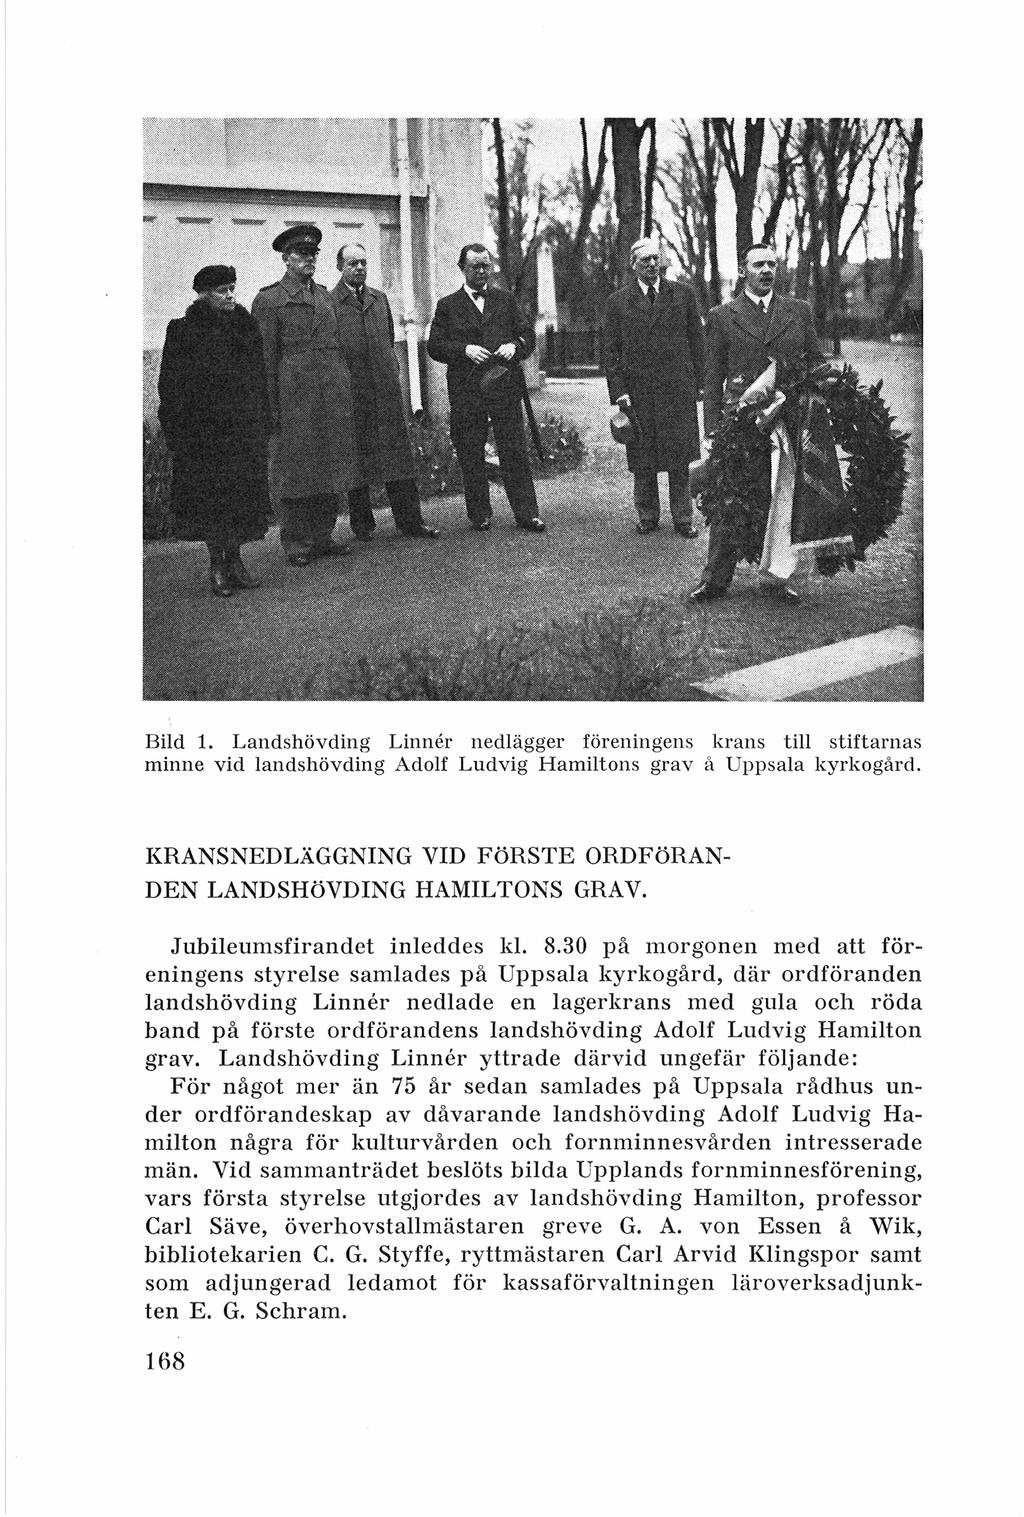 Bild 1. Landshövdin g Linner nedlägger förenin gens kra ns till stiftarnas minne vid landshövdin g Adolf Ludvig Hamiltons grav å Uppsala kyrkogård.